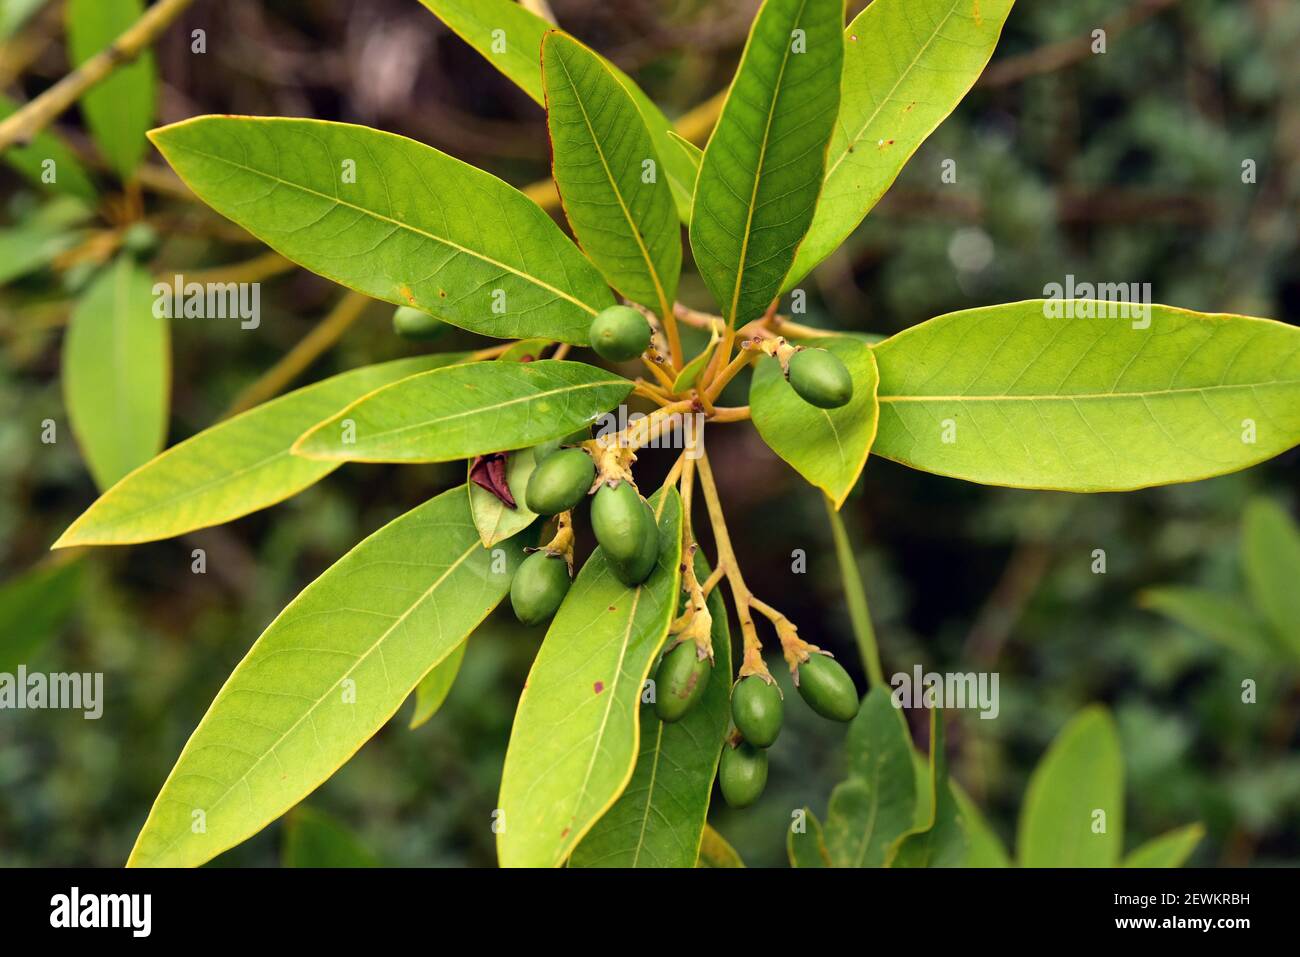 Viñatigo (Persea indica) è un albero sempreverde endemico della Macaronesia (Isole Canarie, Madera e Azzorre). Dettagli su frutta e foglie immature. Foto Stock